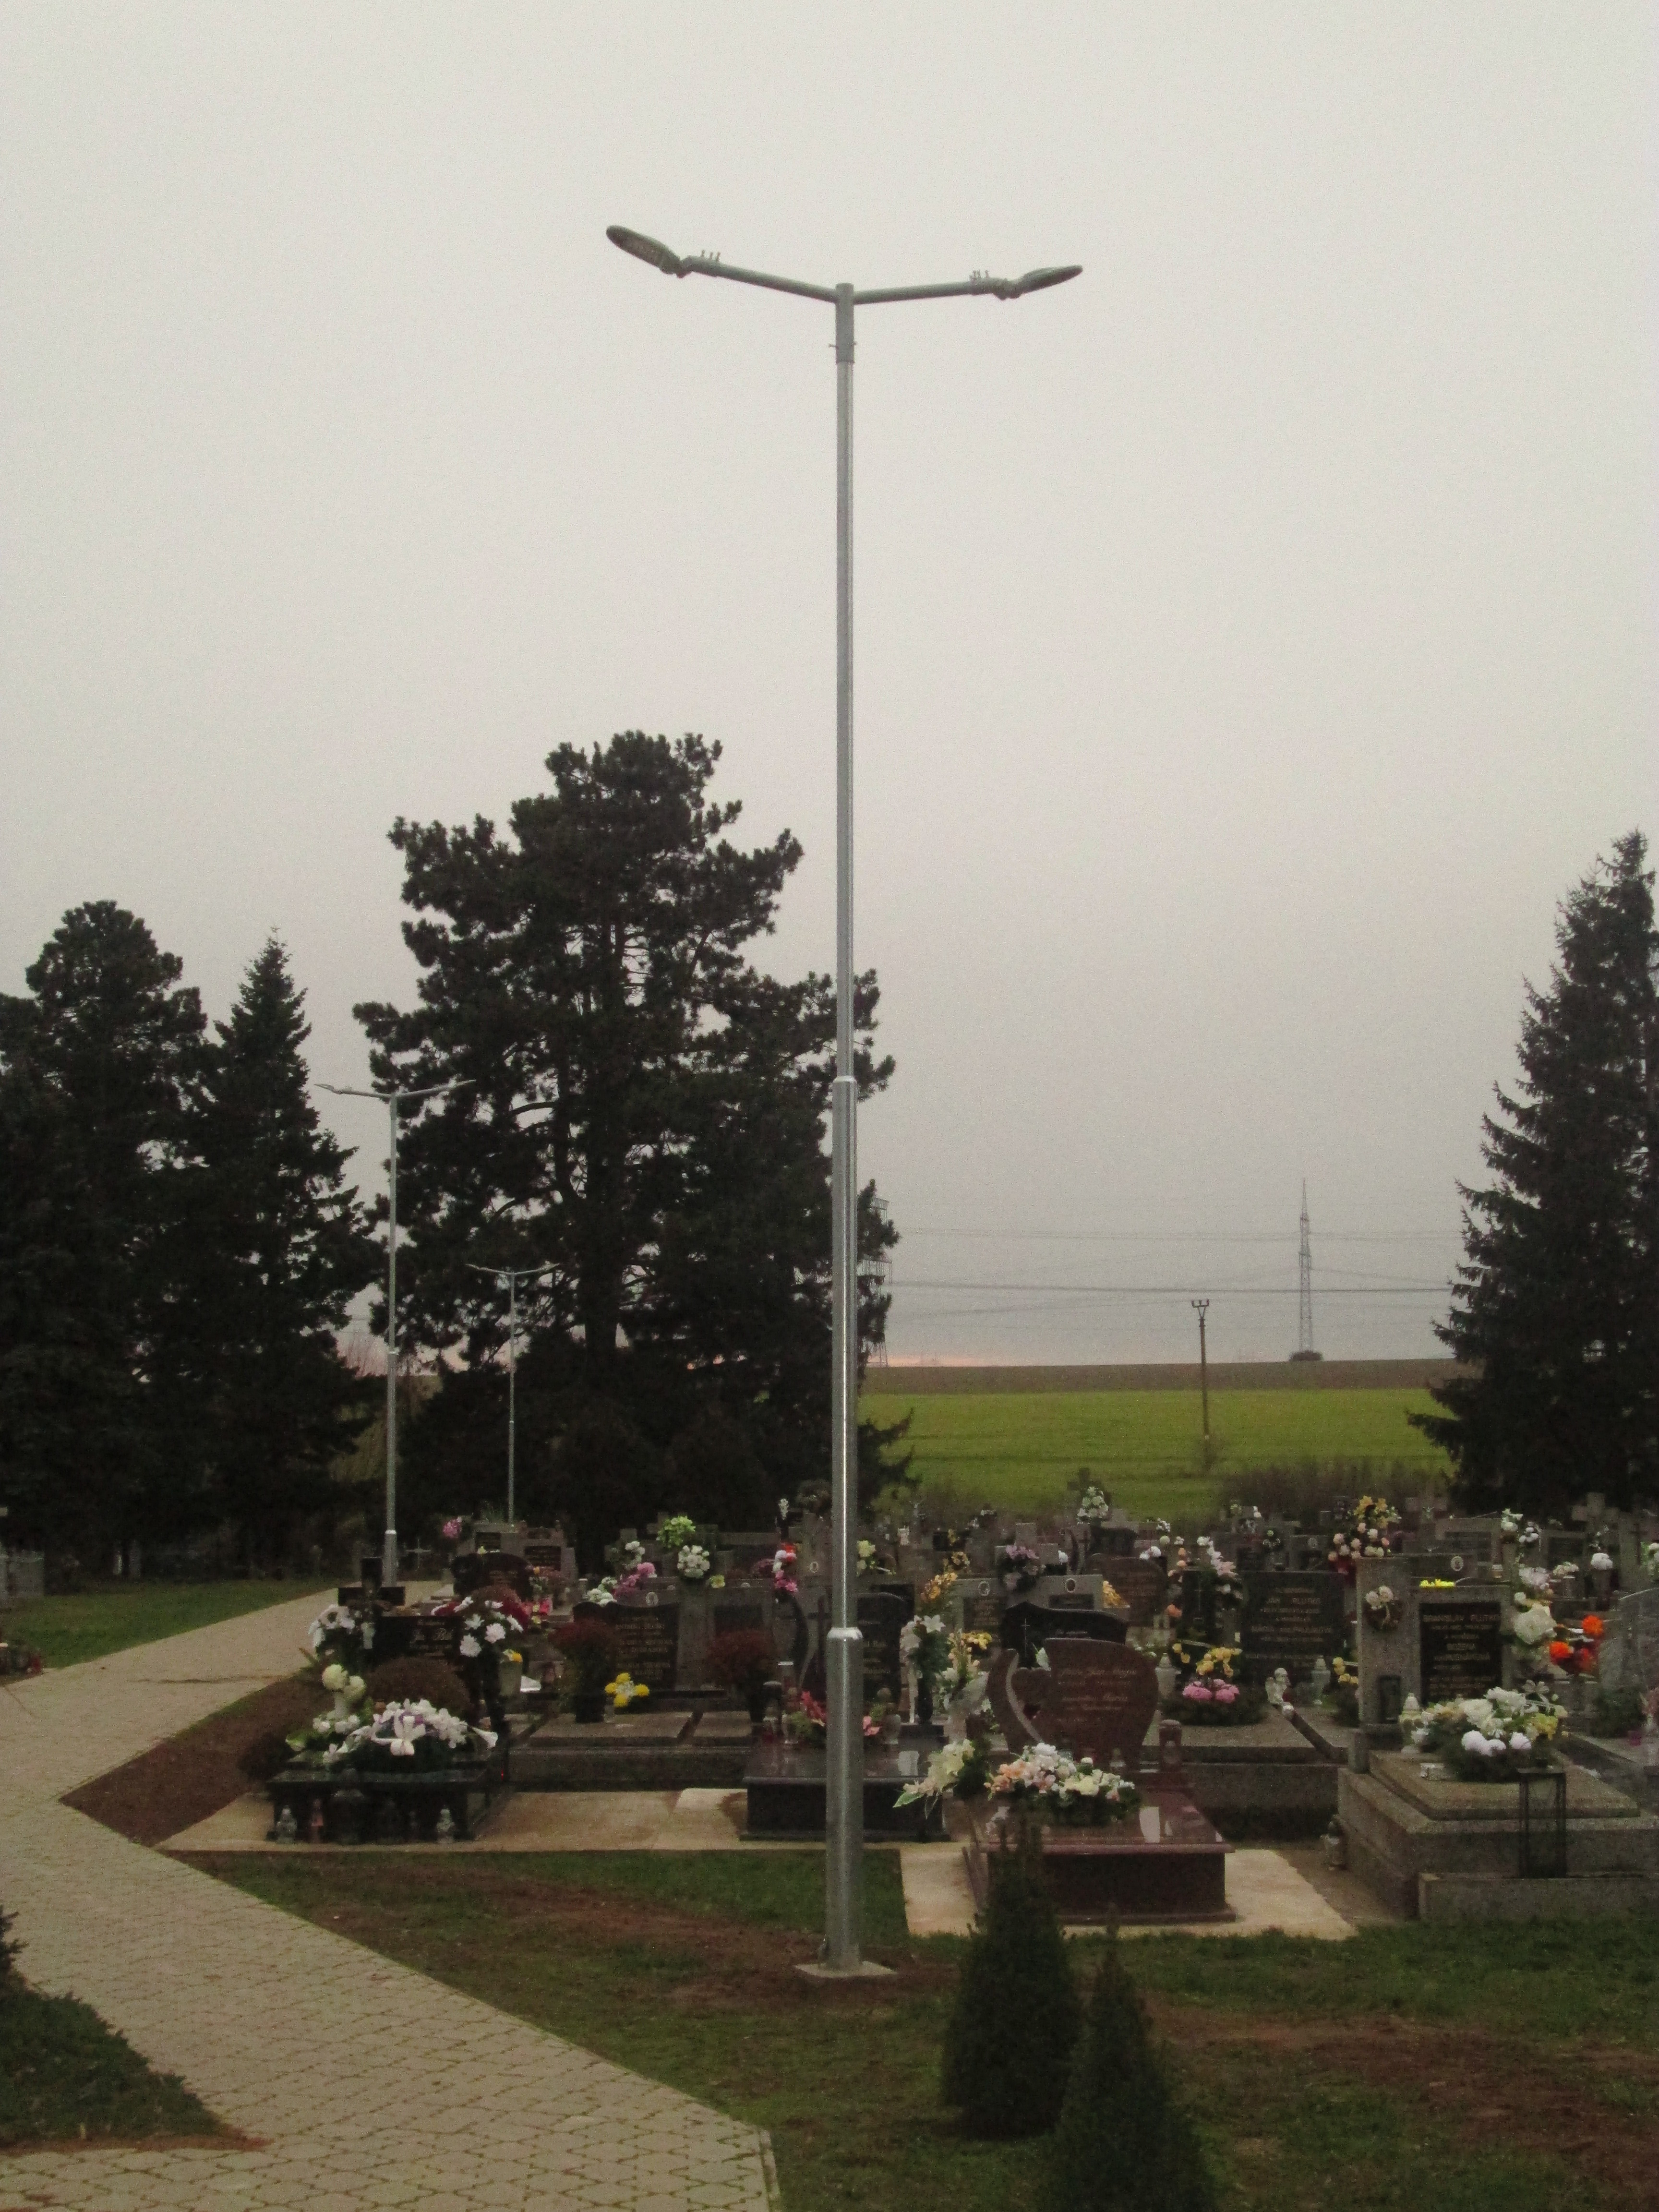 Sviatok Všetkých svätých s novým verejným osvetlením cintorína